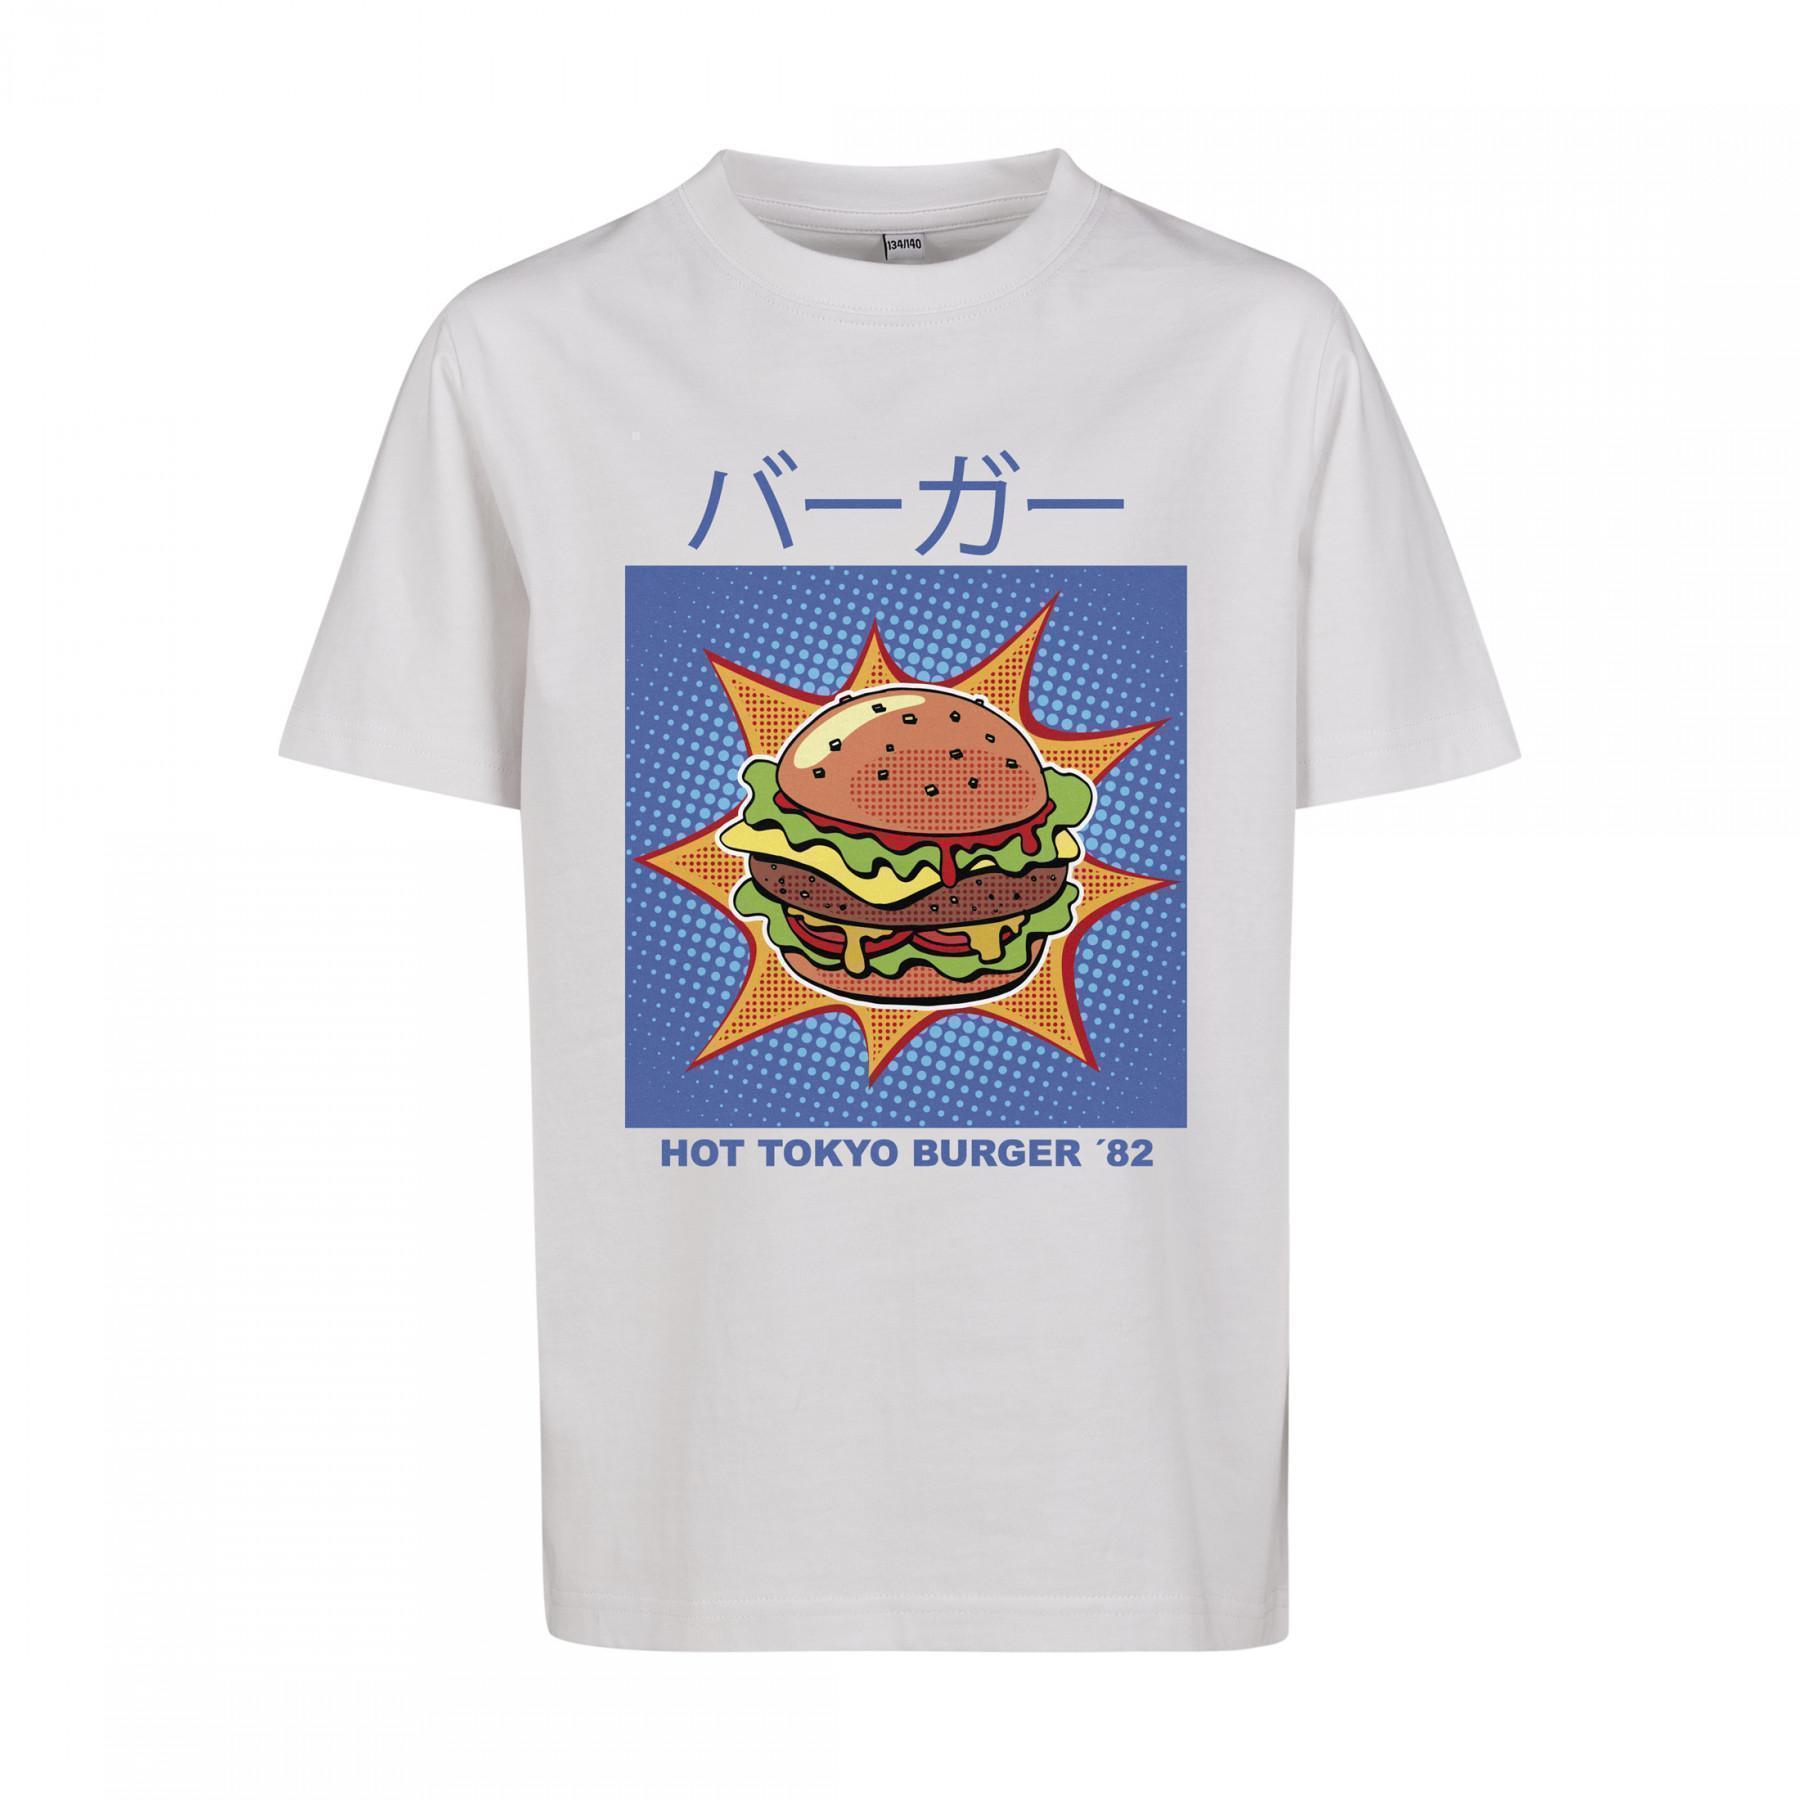 T-shirt child miter tokyo burger